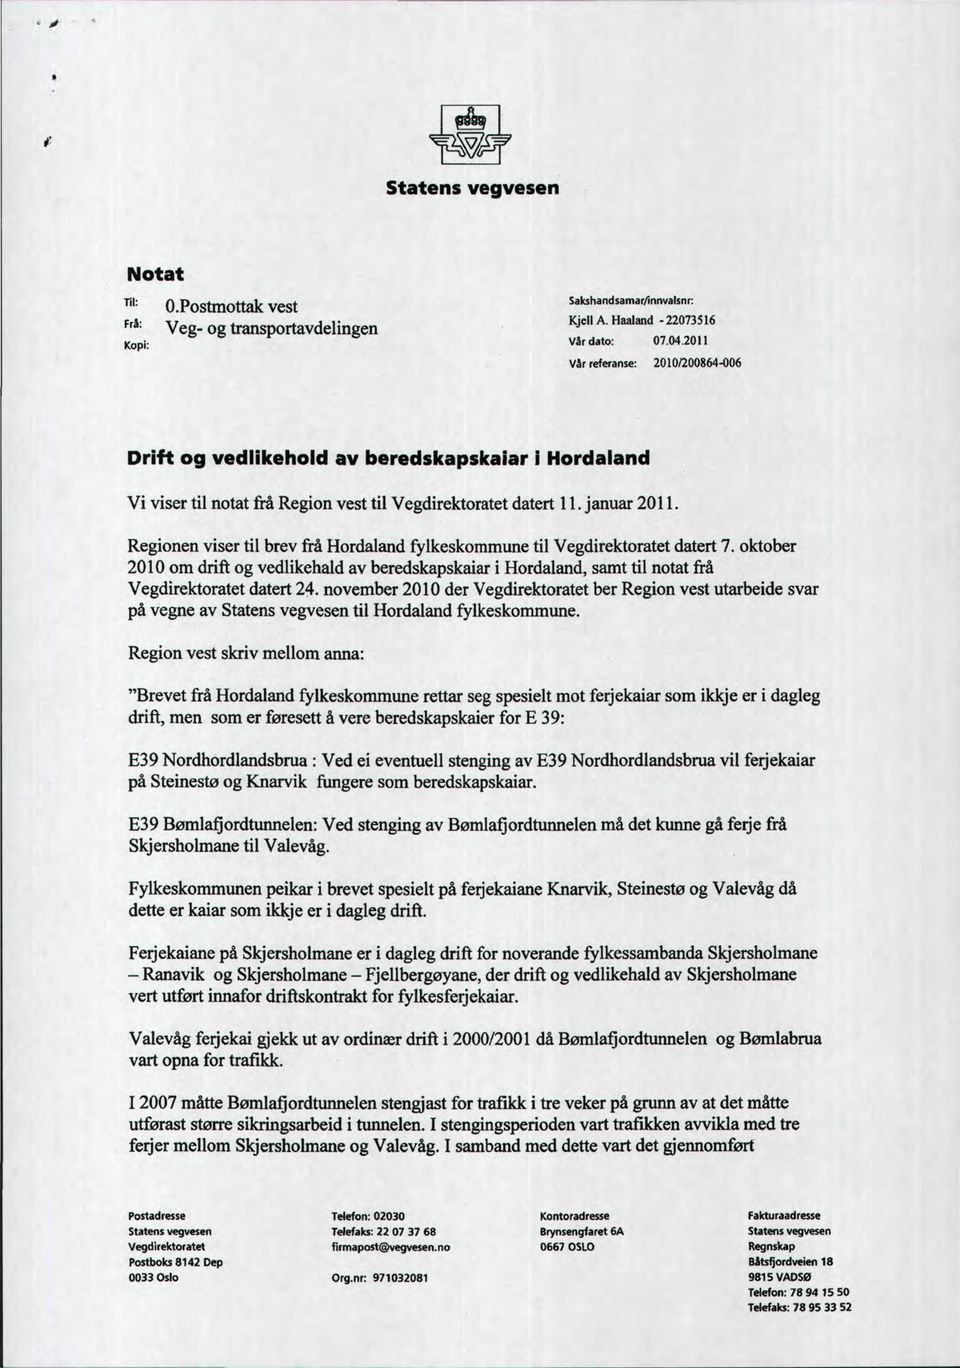 Regionen viser til brev frå Hordaland fylkeskommune til Vegdirektoratet datert 7. oktober 2010 om drift og vedlikehald av beredskapskaiar i Hordaland, samt til notat frå Vegdirektoratet datert 24.